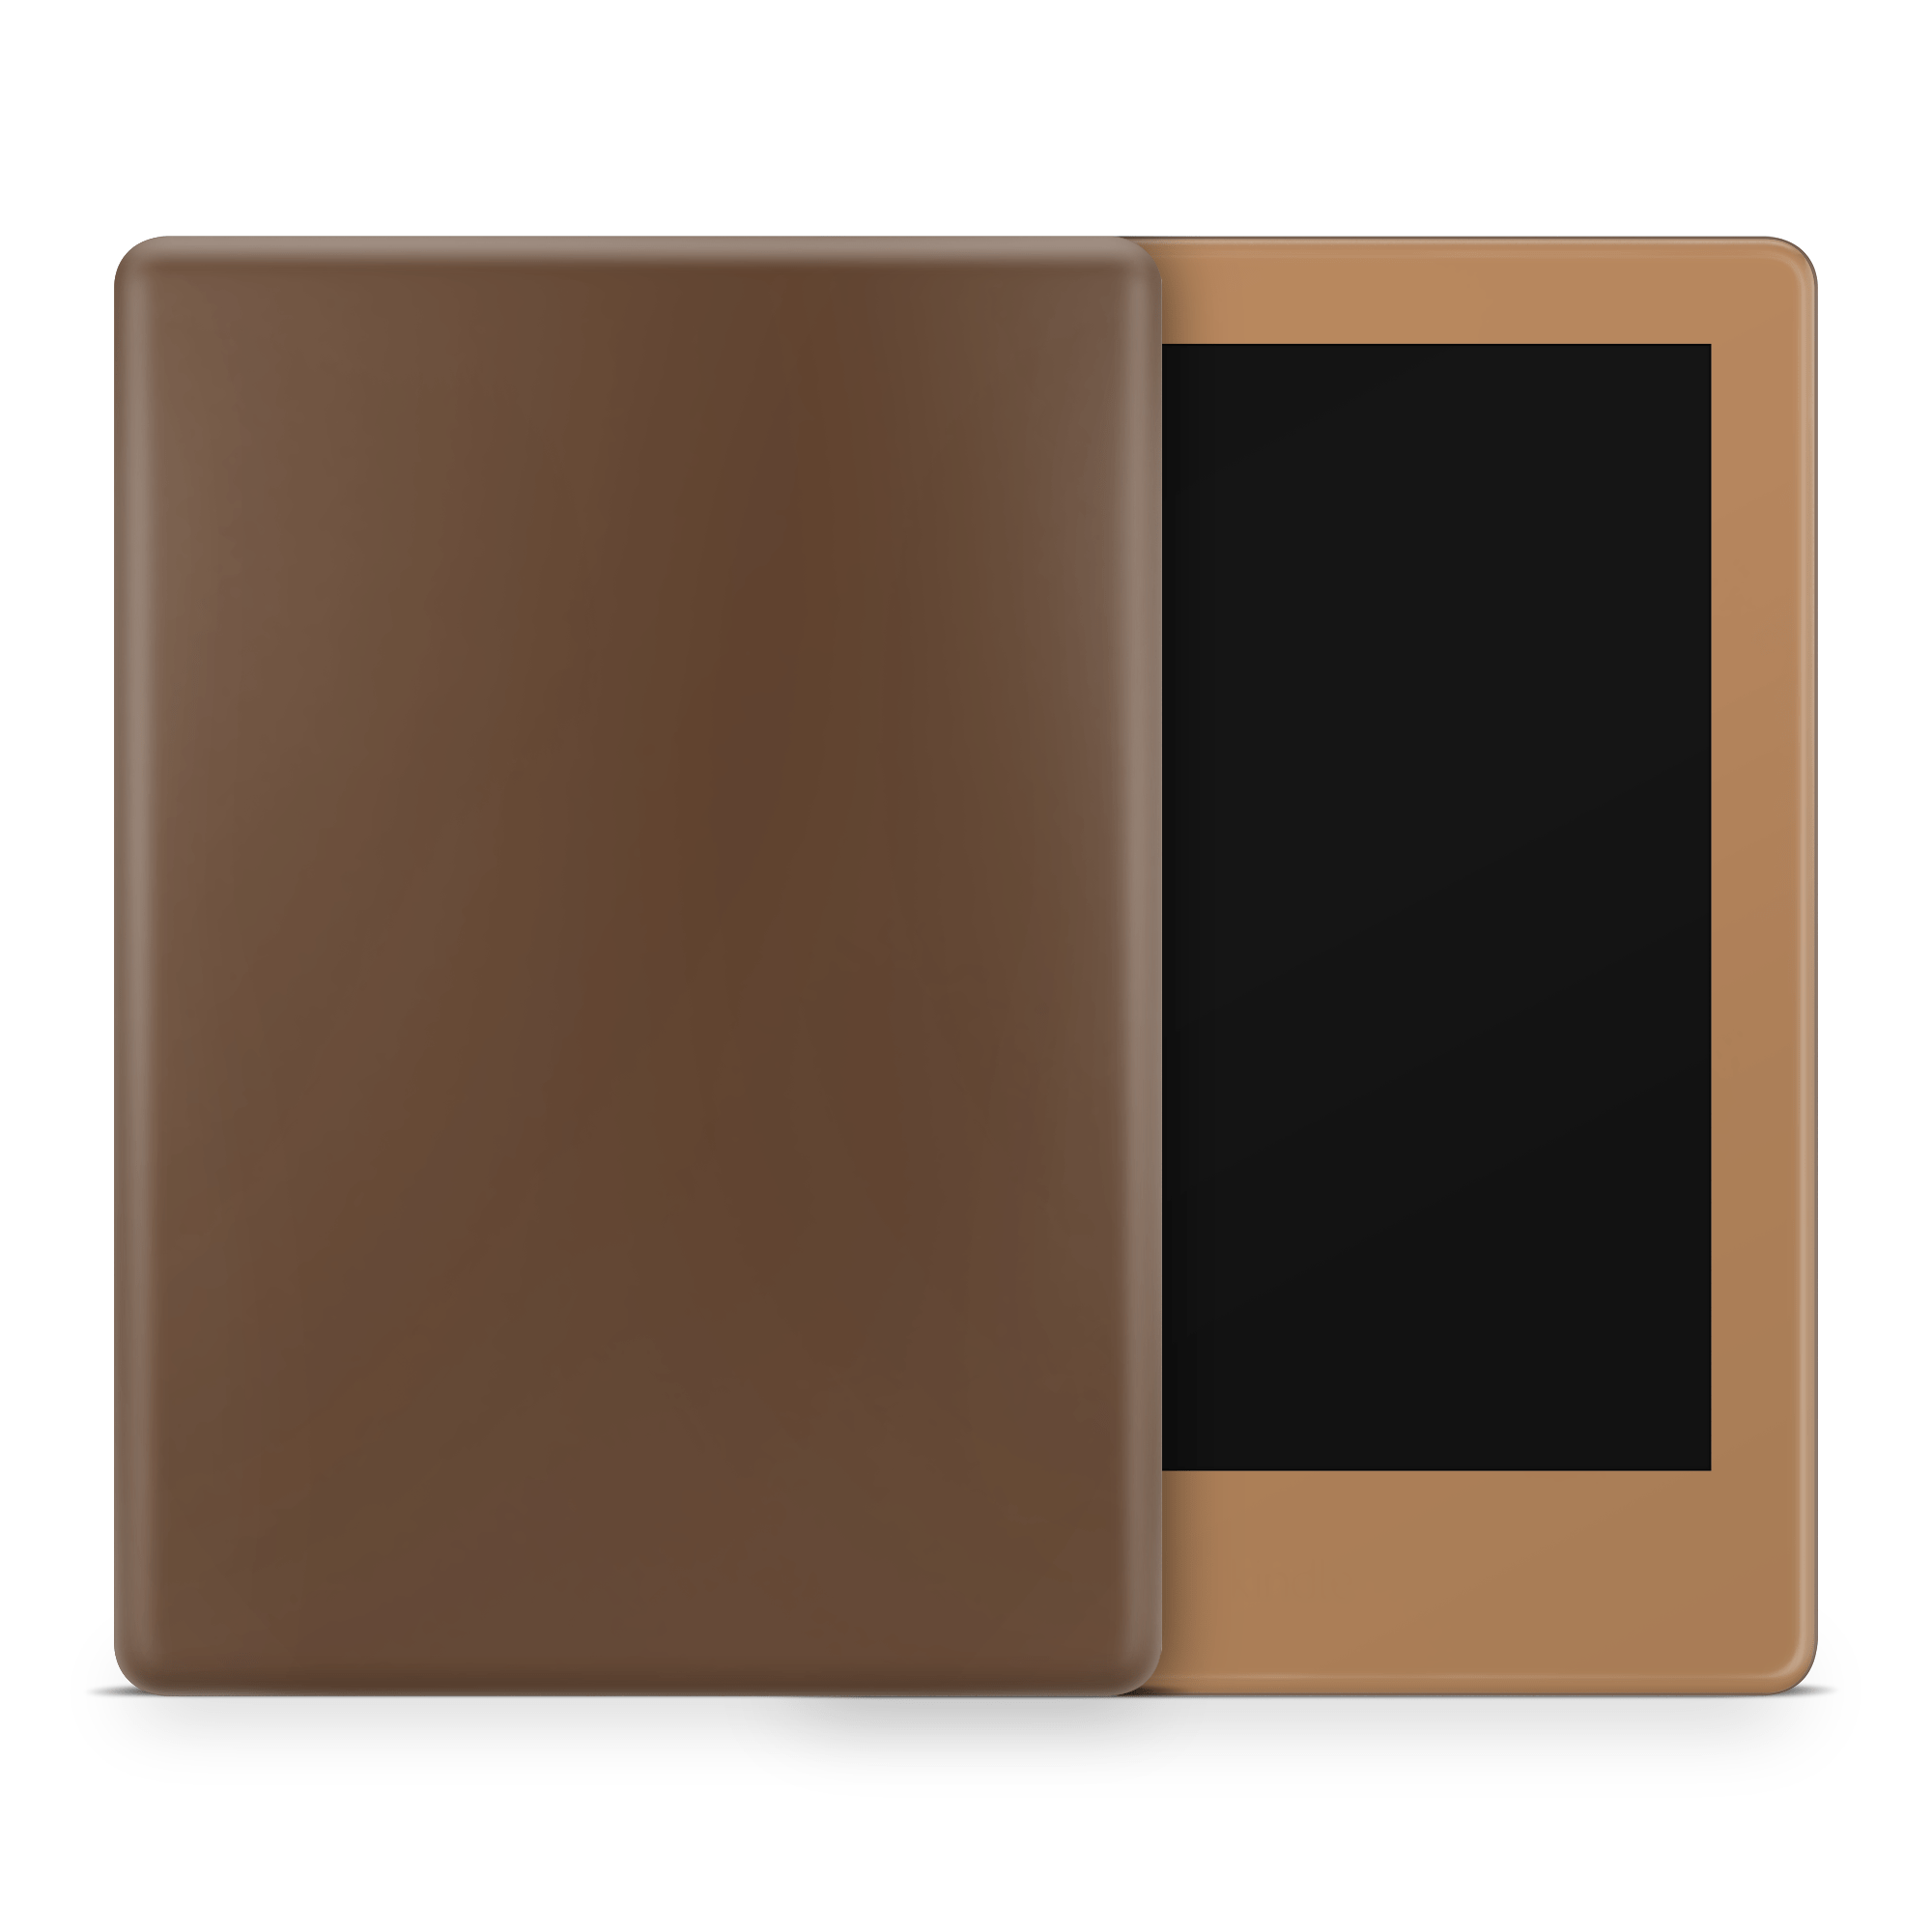 Assorted Chocolates Amazon Kindle Skins